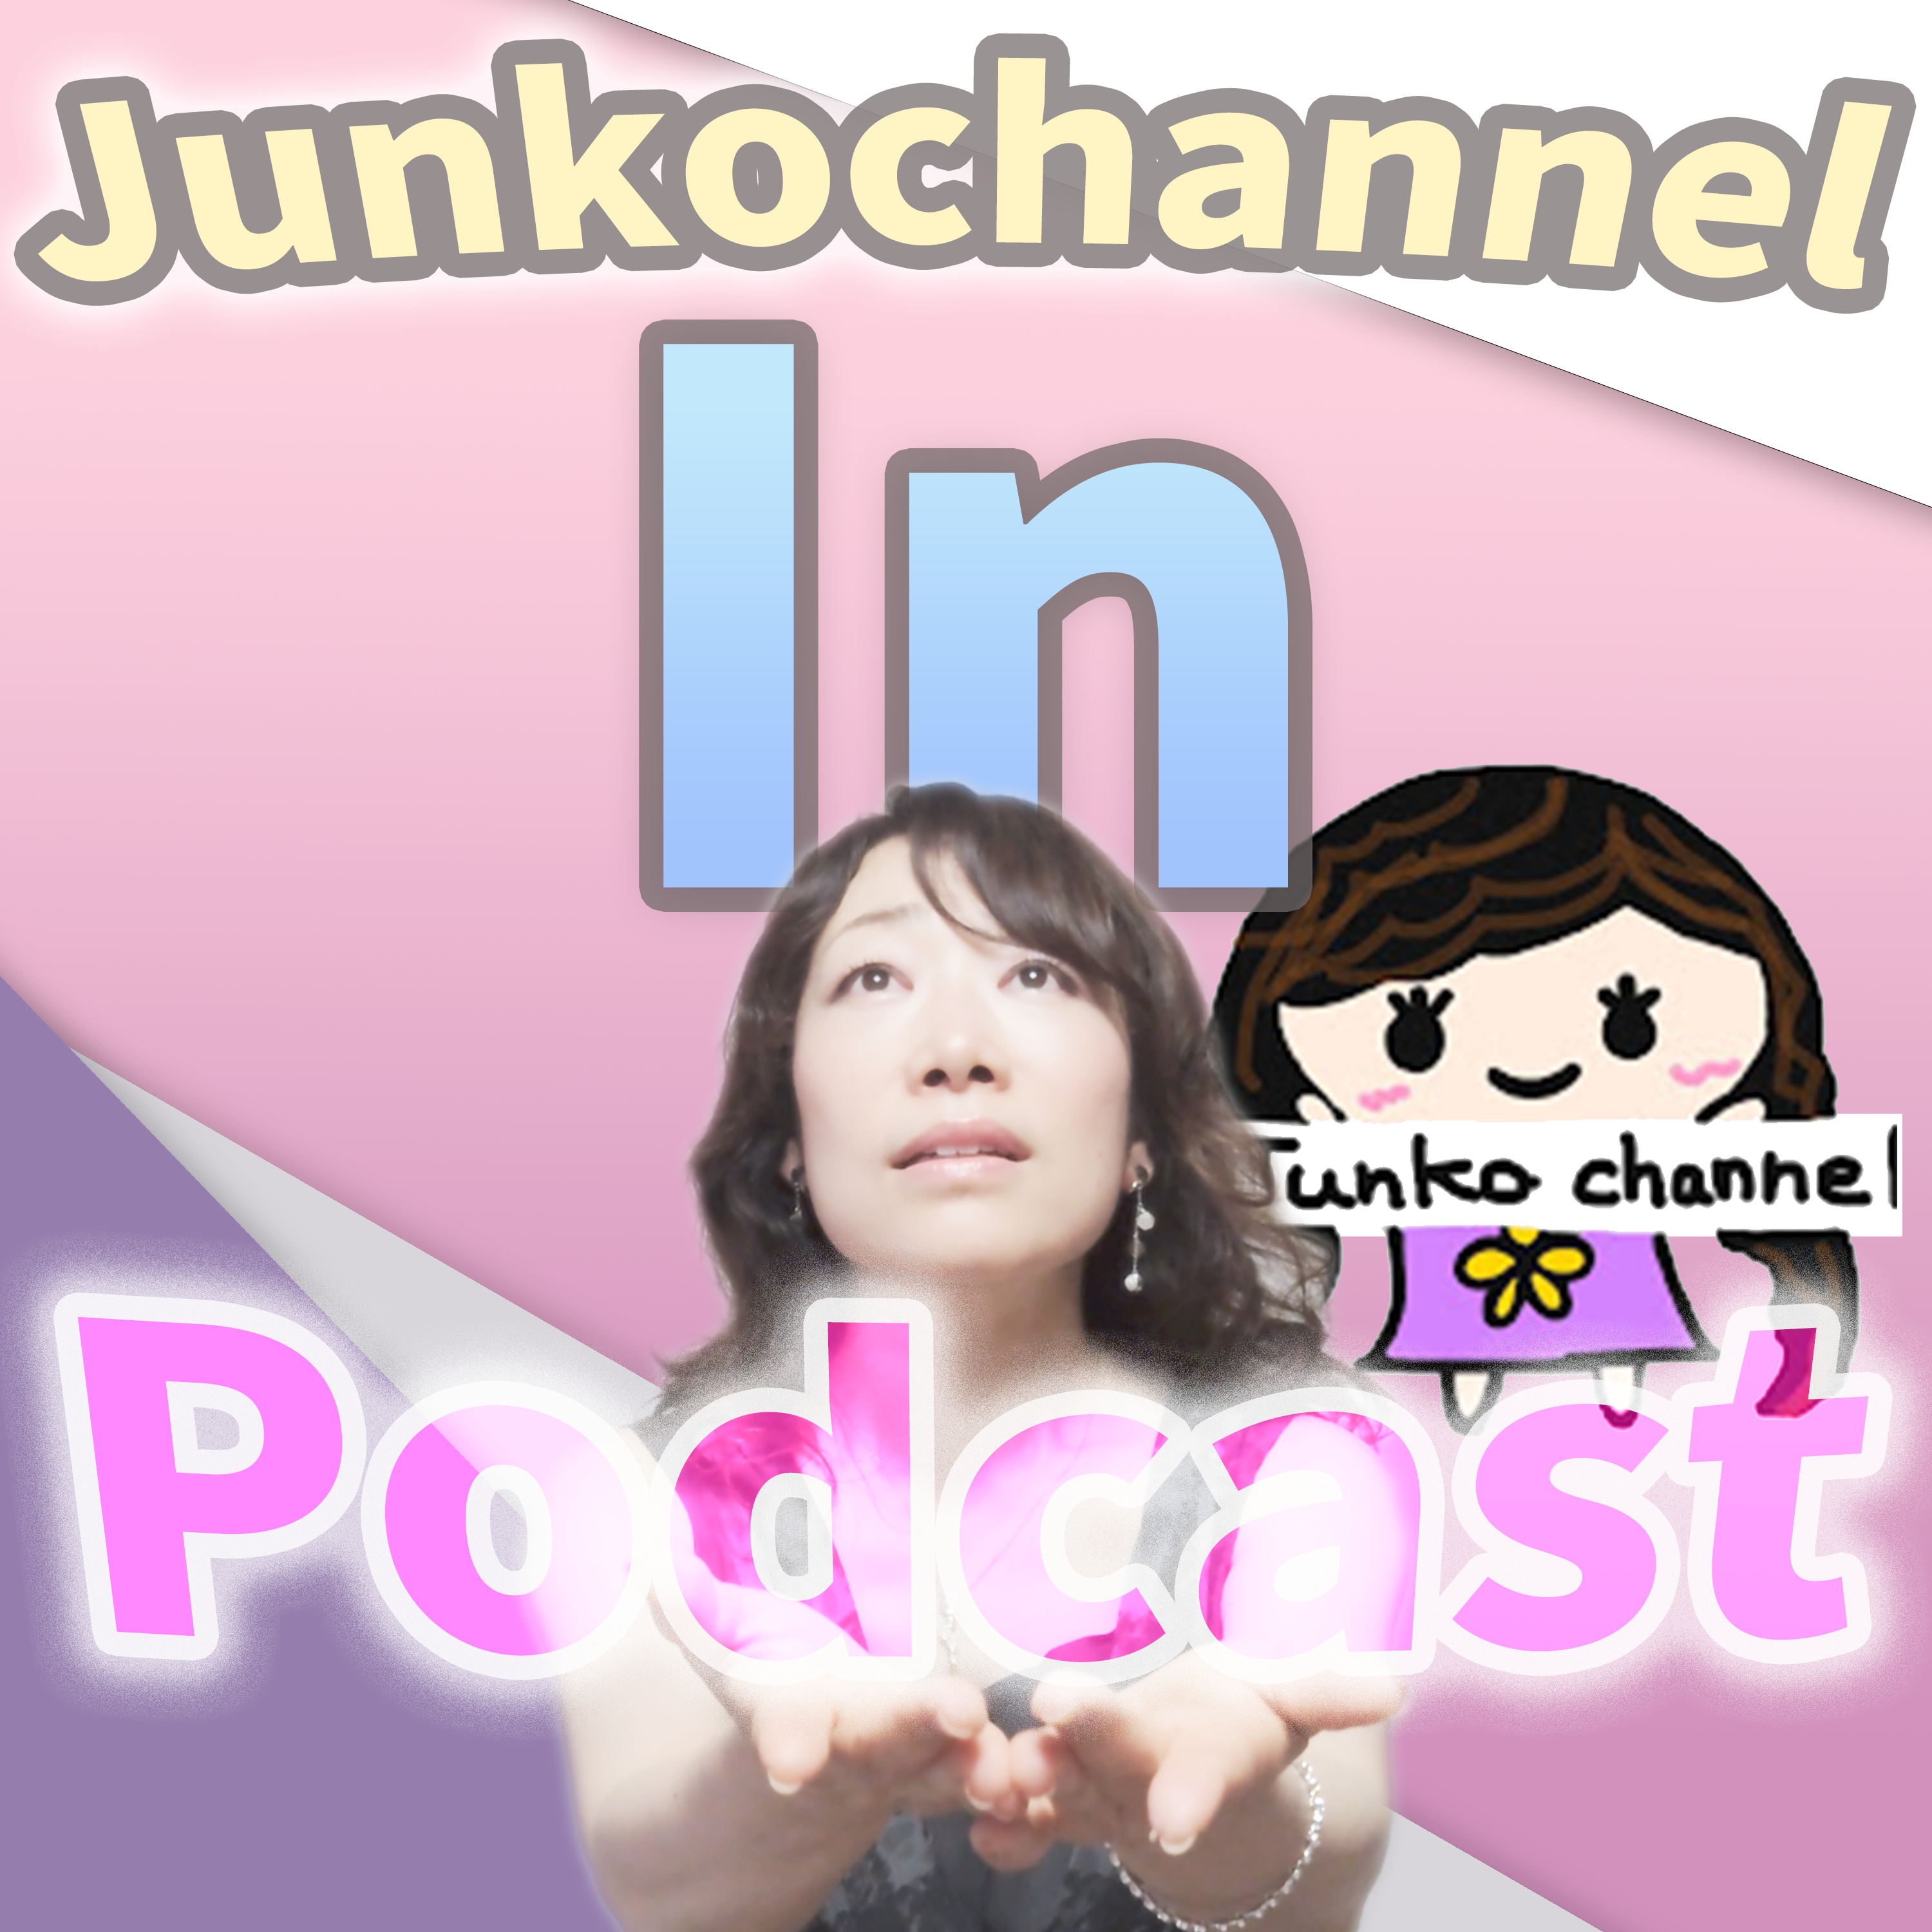  Junko Channel in Podcast per l’italia